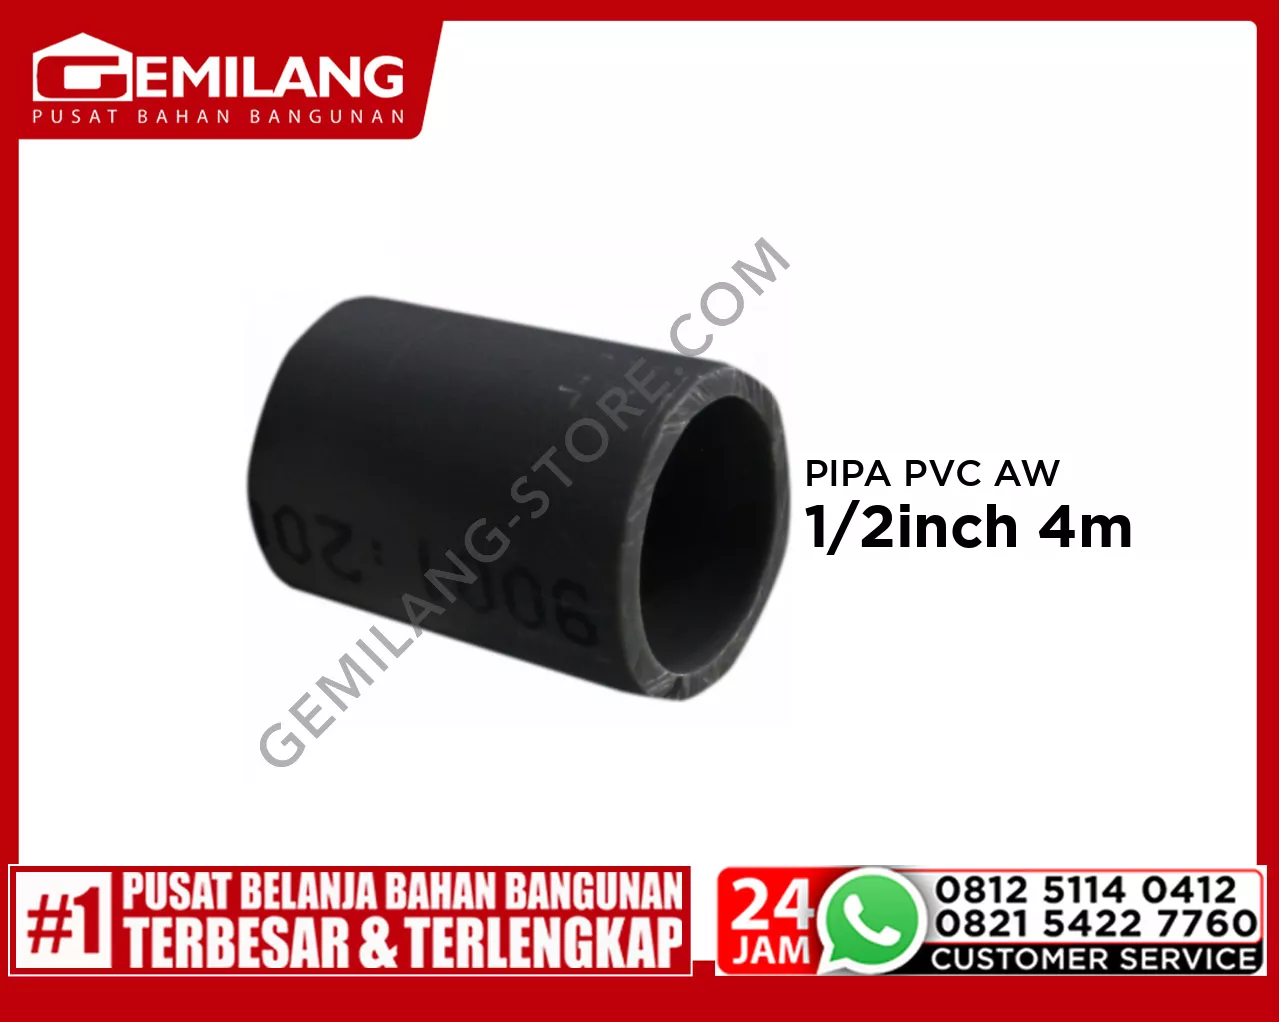 LANGGENG PIPA PVC AW ABU-ABU 1/2inch 4m